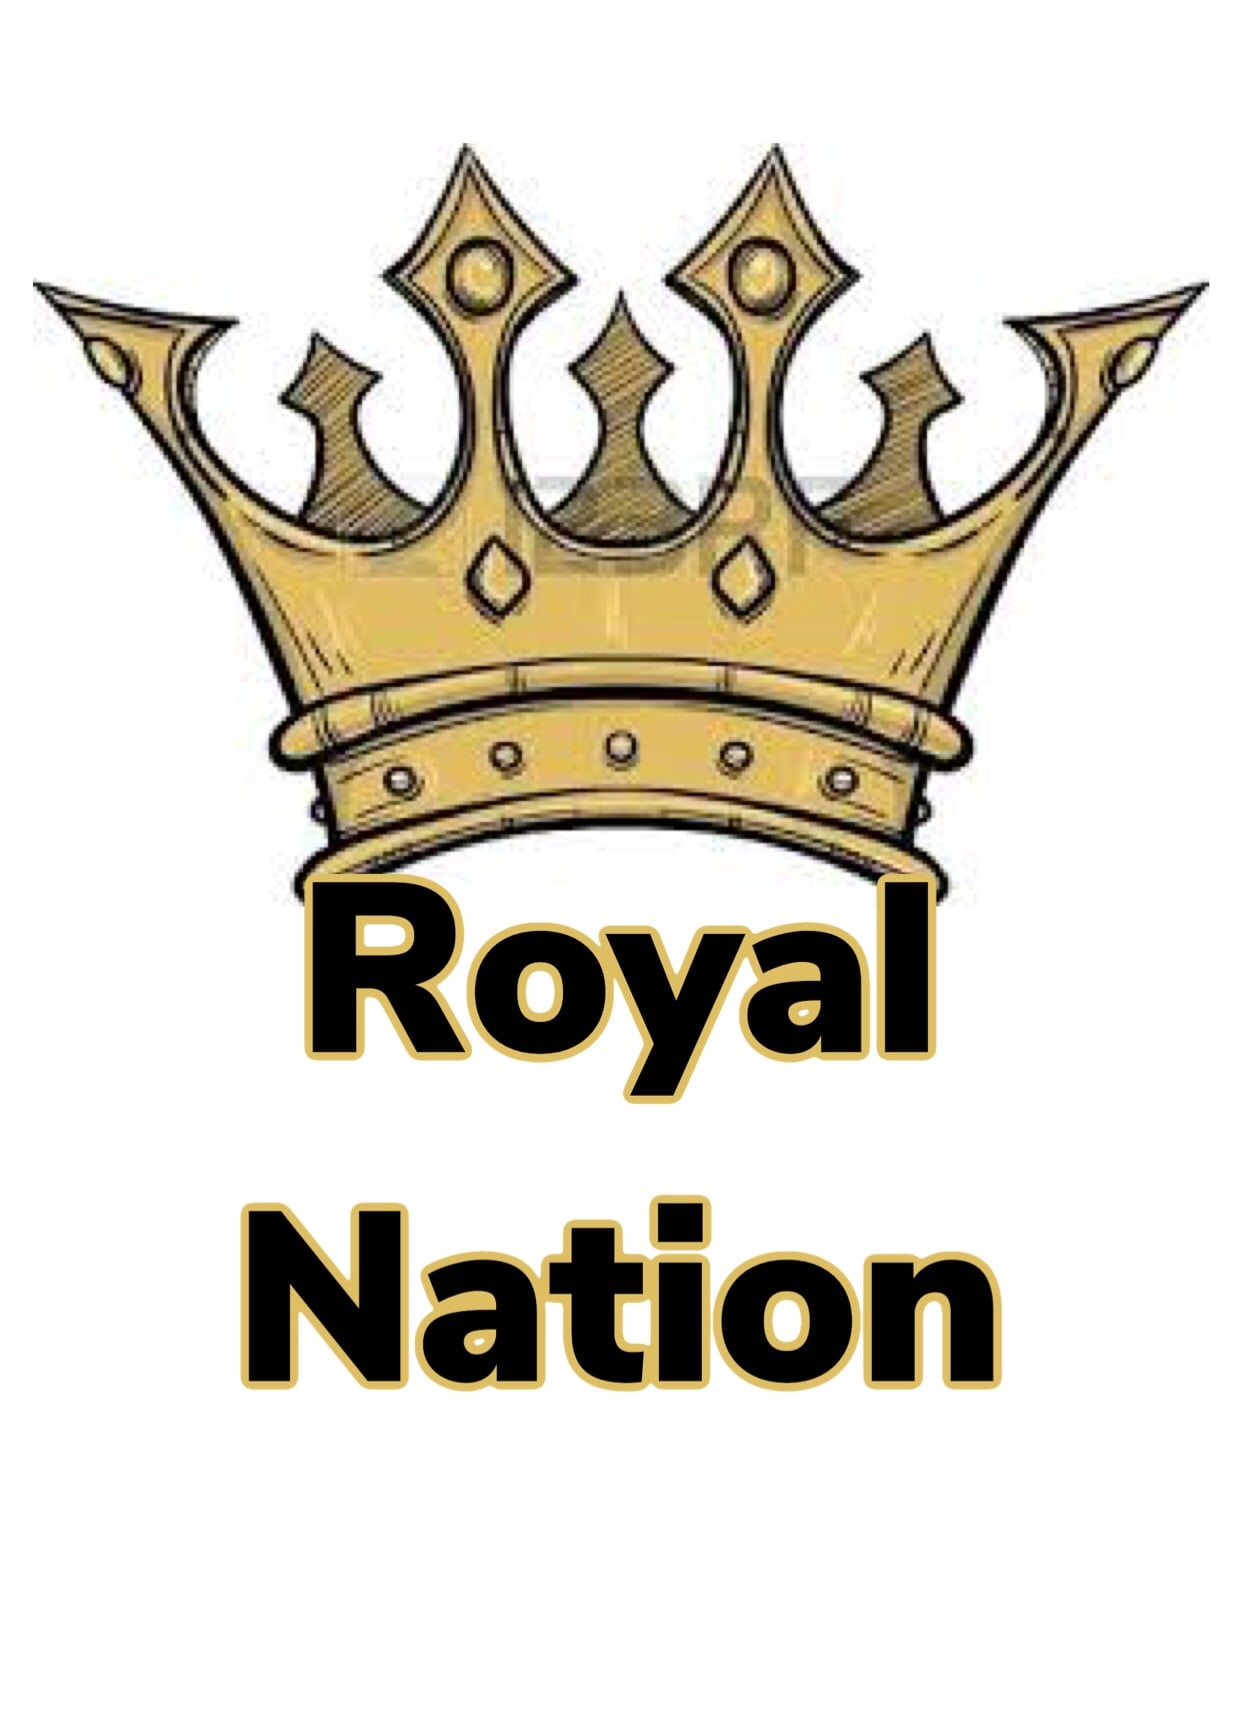 Royal Nation